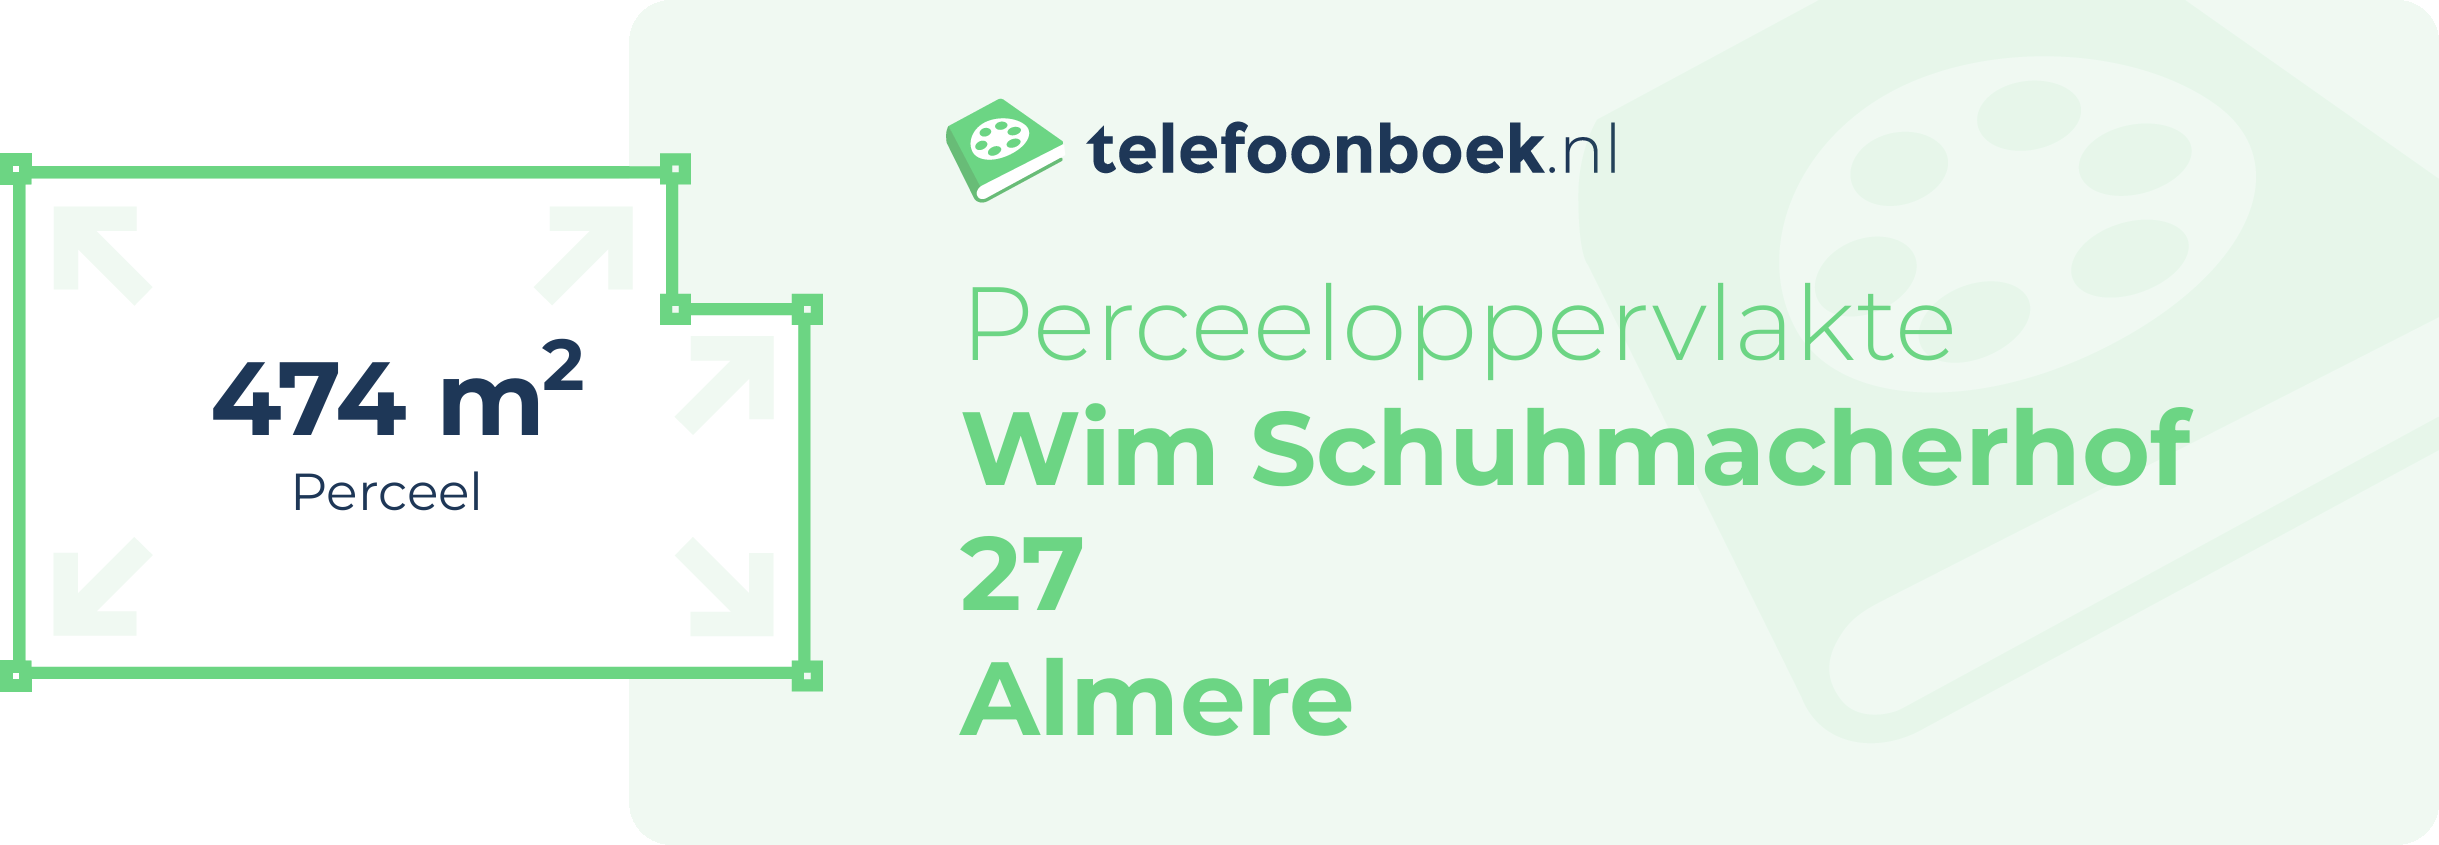 Perceeloppervlakte Wim Schuhmacherhof 27 Almere